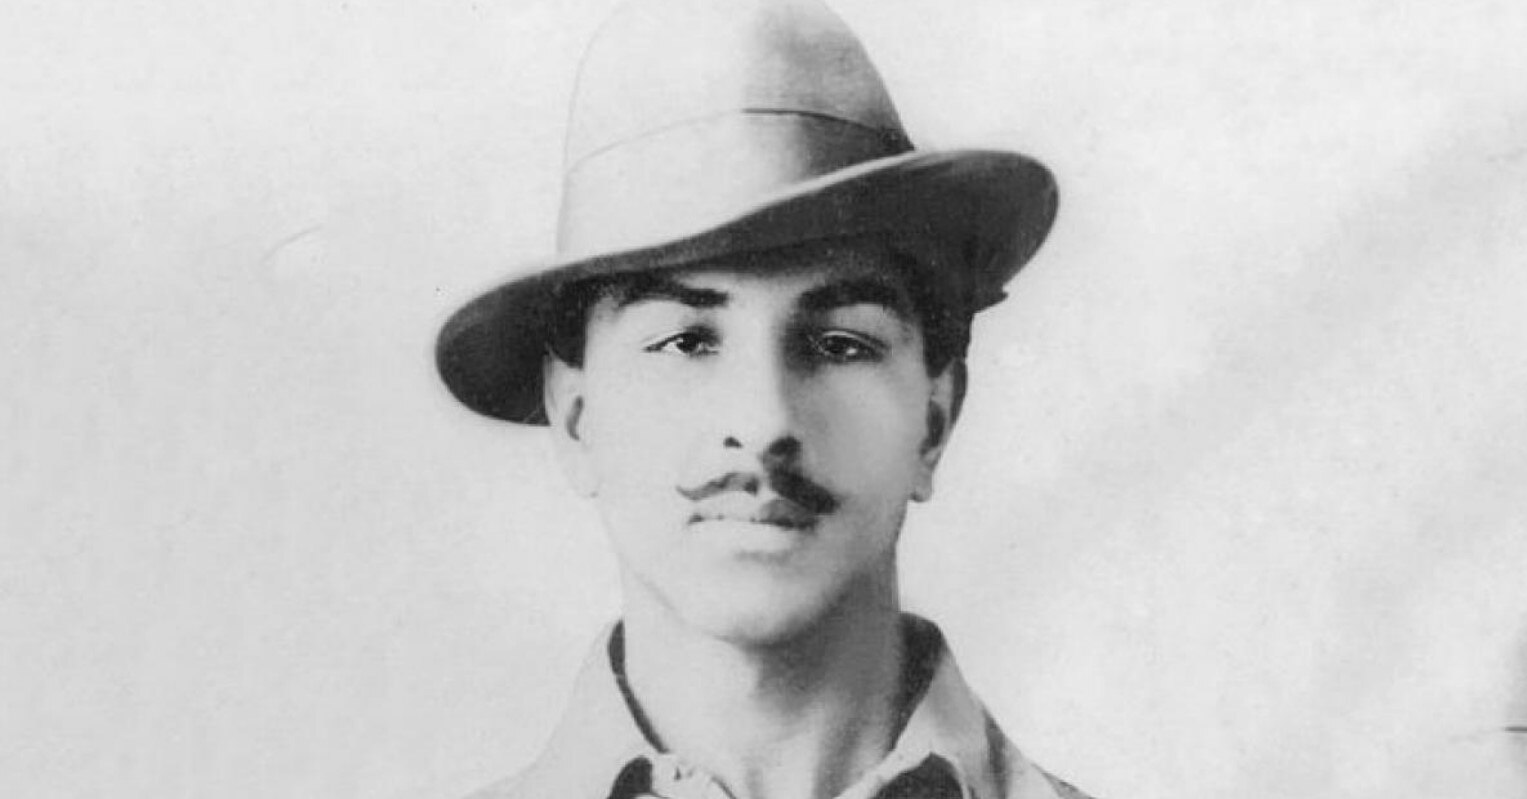 भगत सिंह ने फांसी से पहले सफाईकर्मी को बताई थी आखिरी इच्छा, जो नहीं हो सकी पूरी